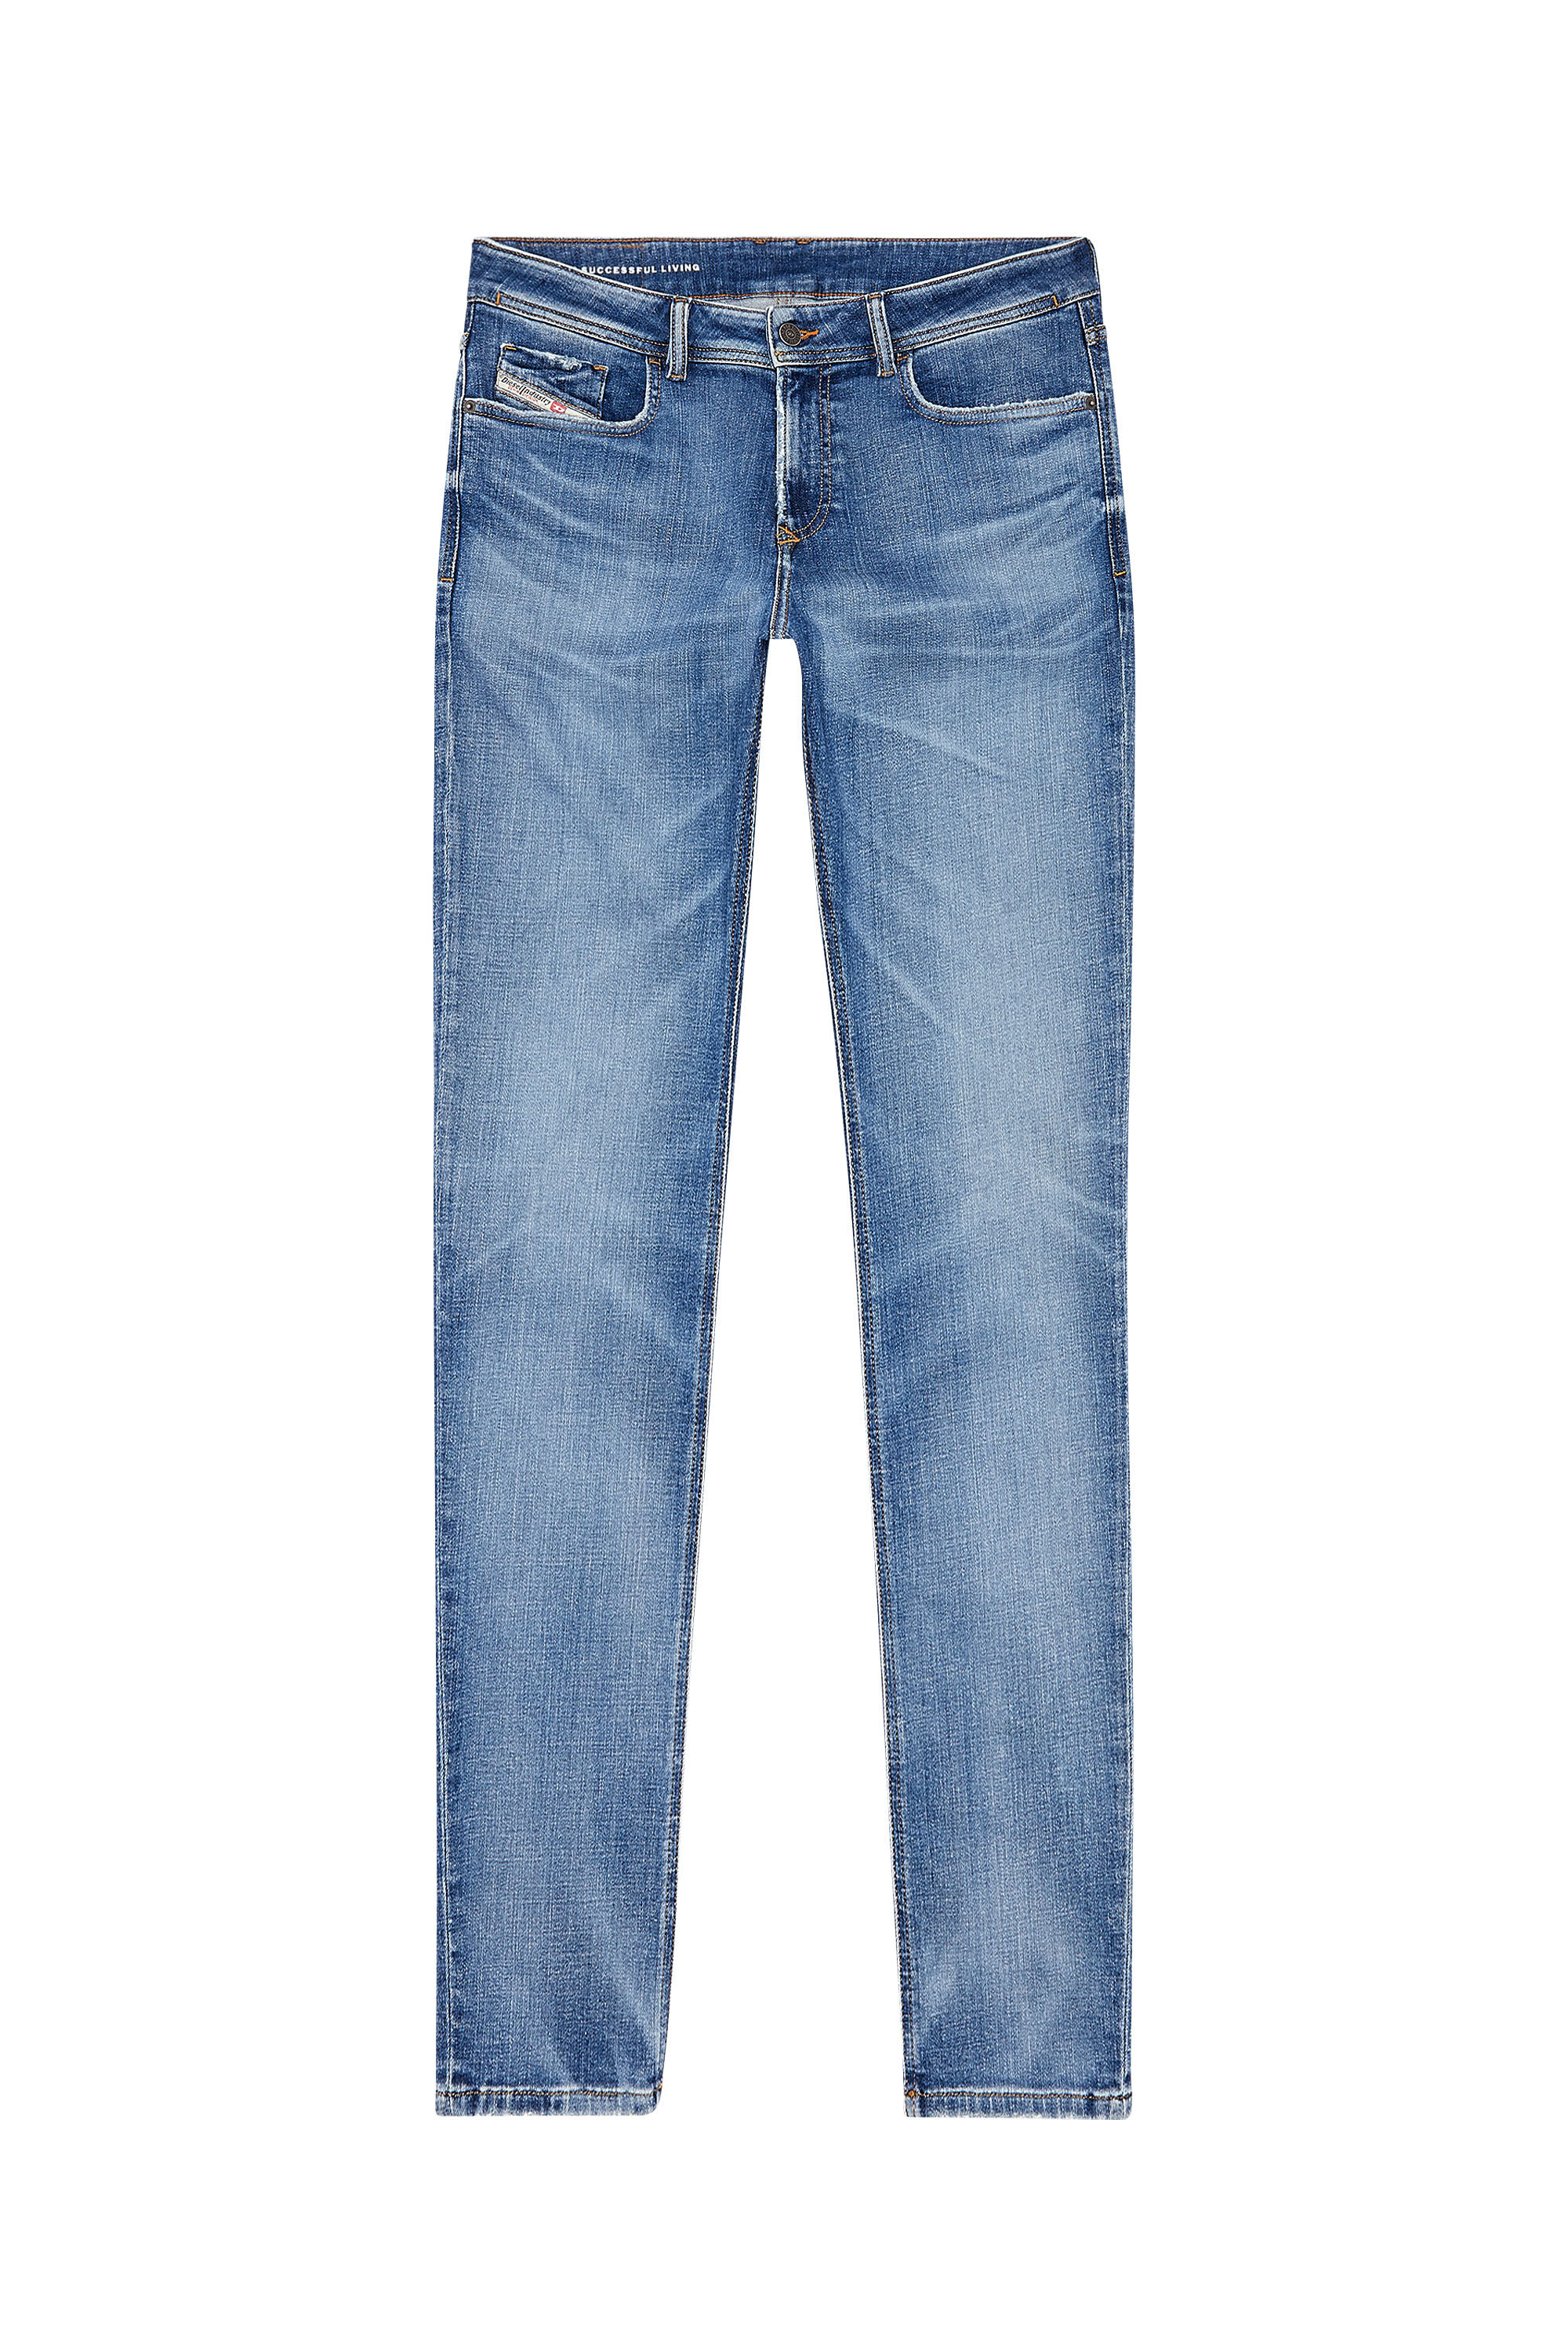 Diesel - Man Skinny Jeans 1979 Sleenker 09H68, Medium blue - Image 2